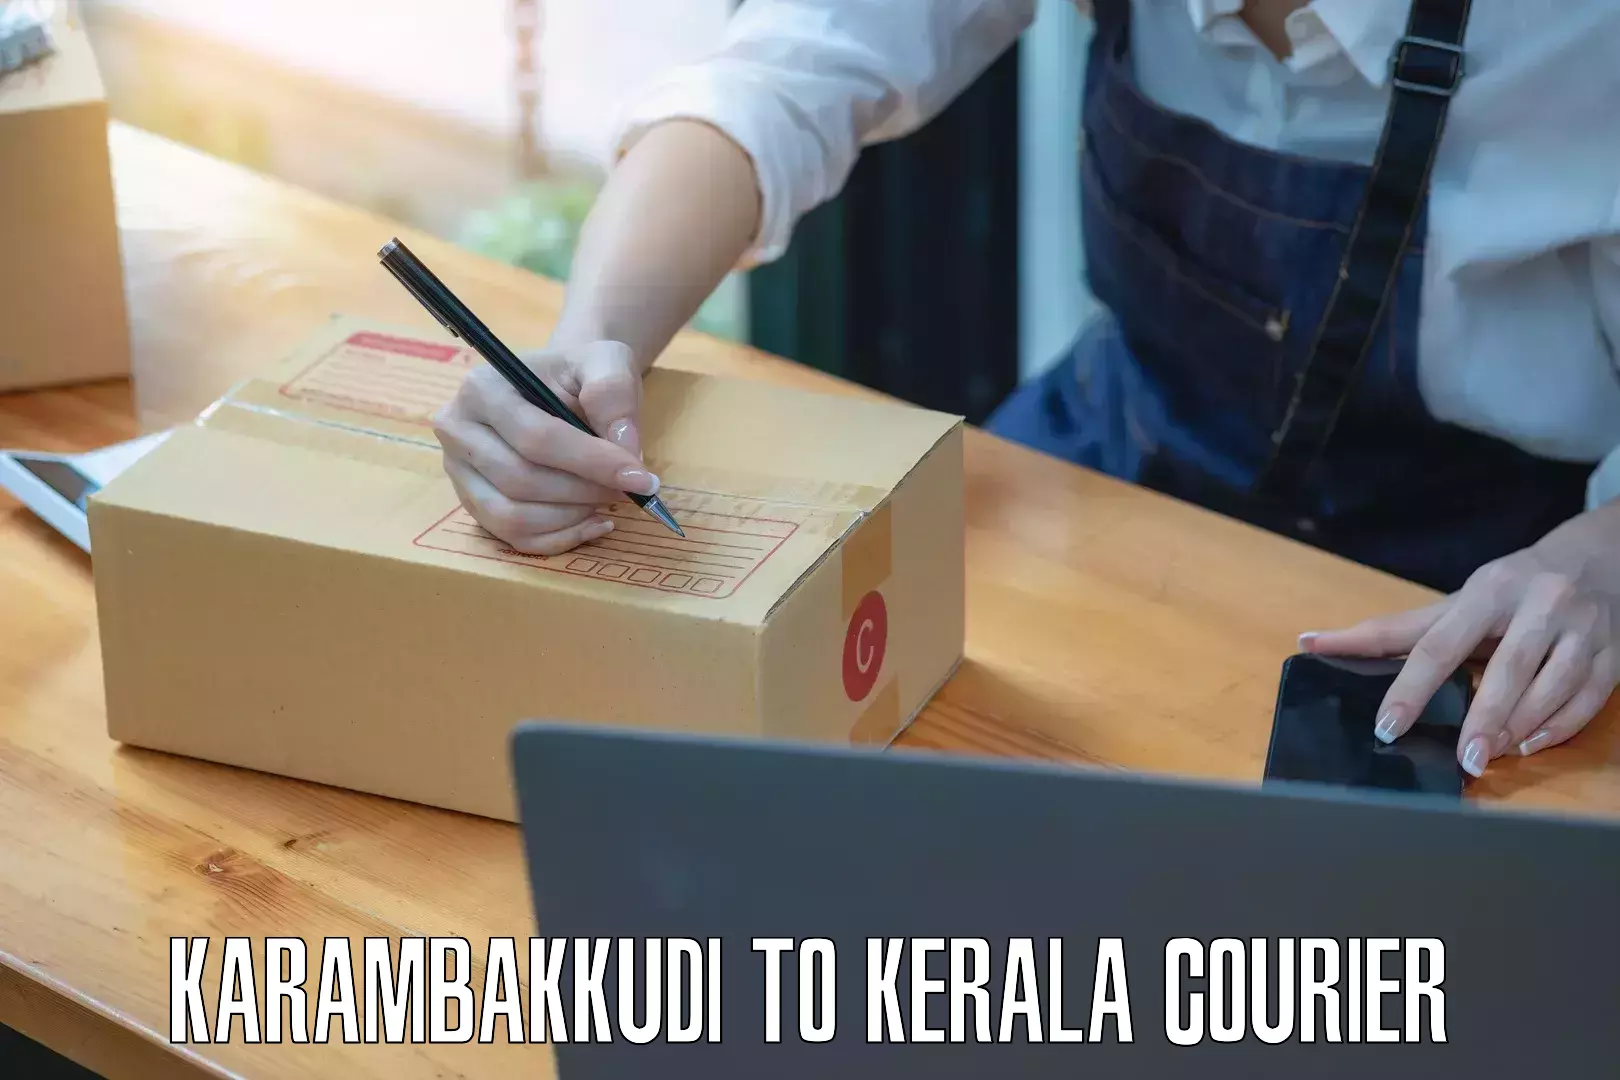 Bulk courier orders Karambakkudi to Mananthavady